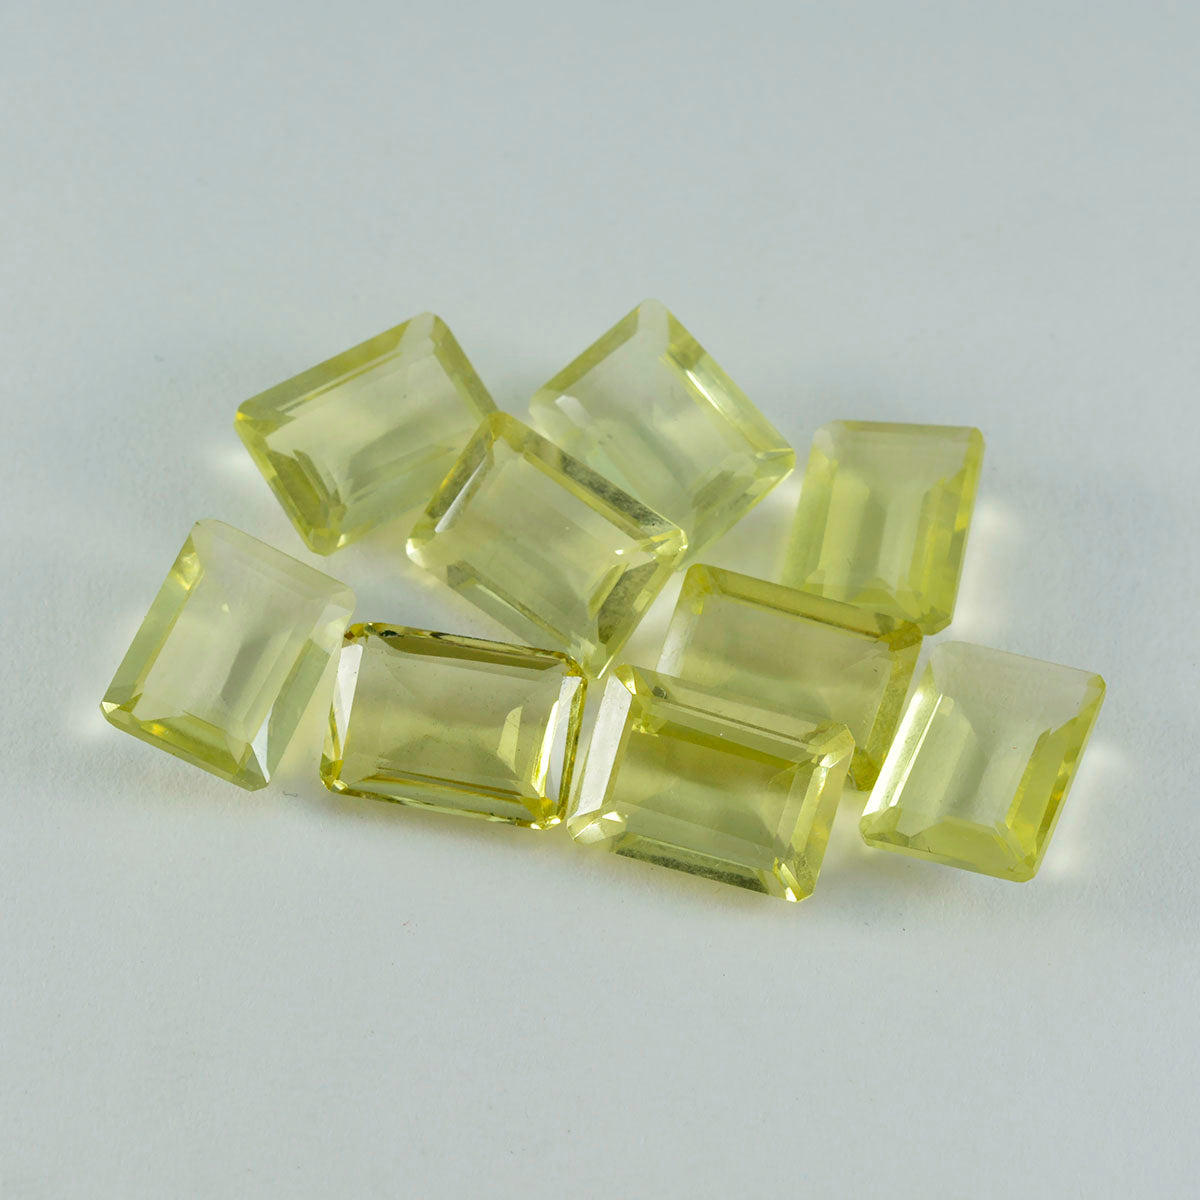 riyogems 1шт желтый лимонный кварц ограненный 8x10 мм восьмиугольная форма хорошее качество драгоценные камни